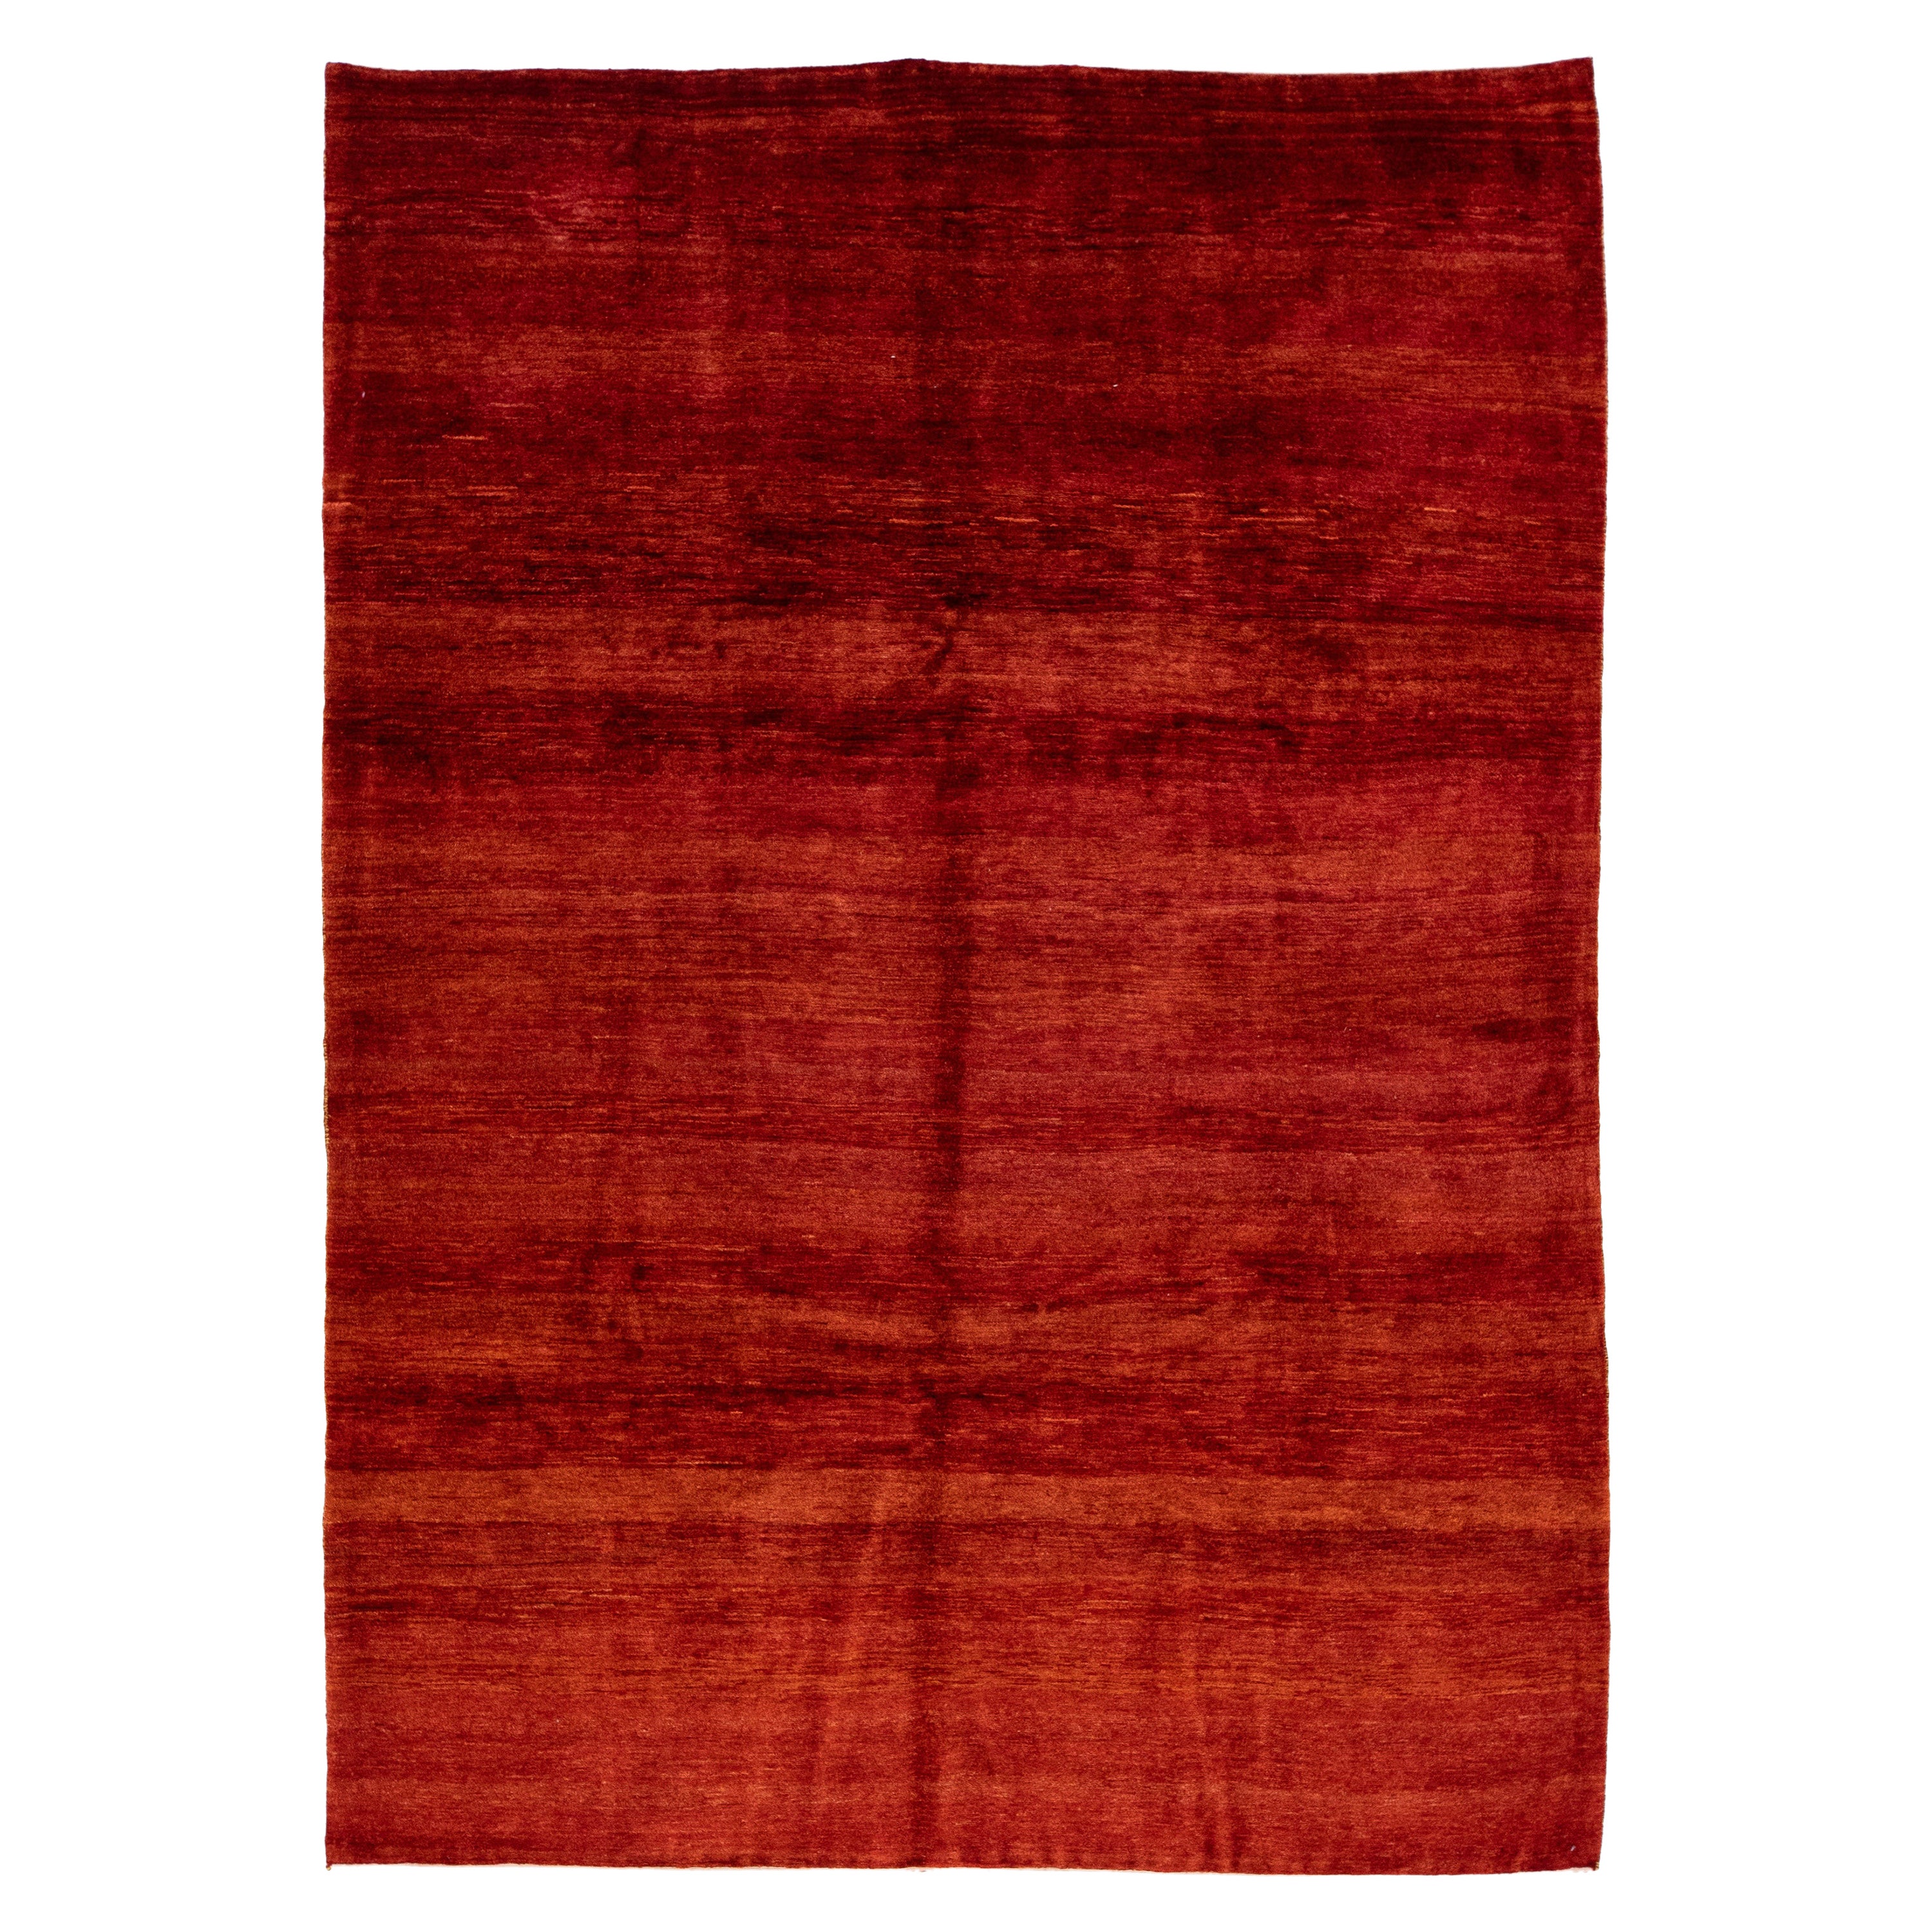  Tapis en laine rouge massif de style Gabbeh moderne fait à la main, taille de pièce